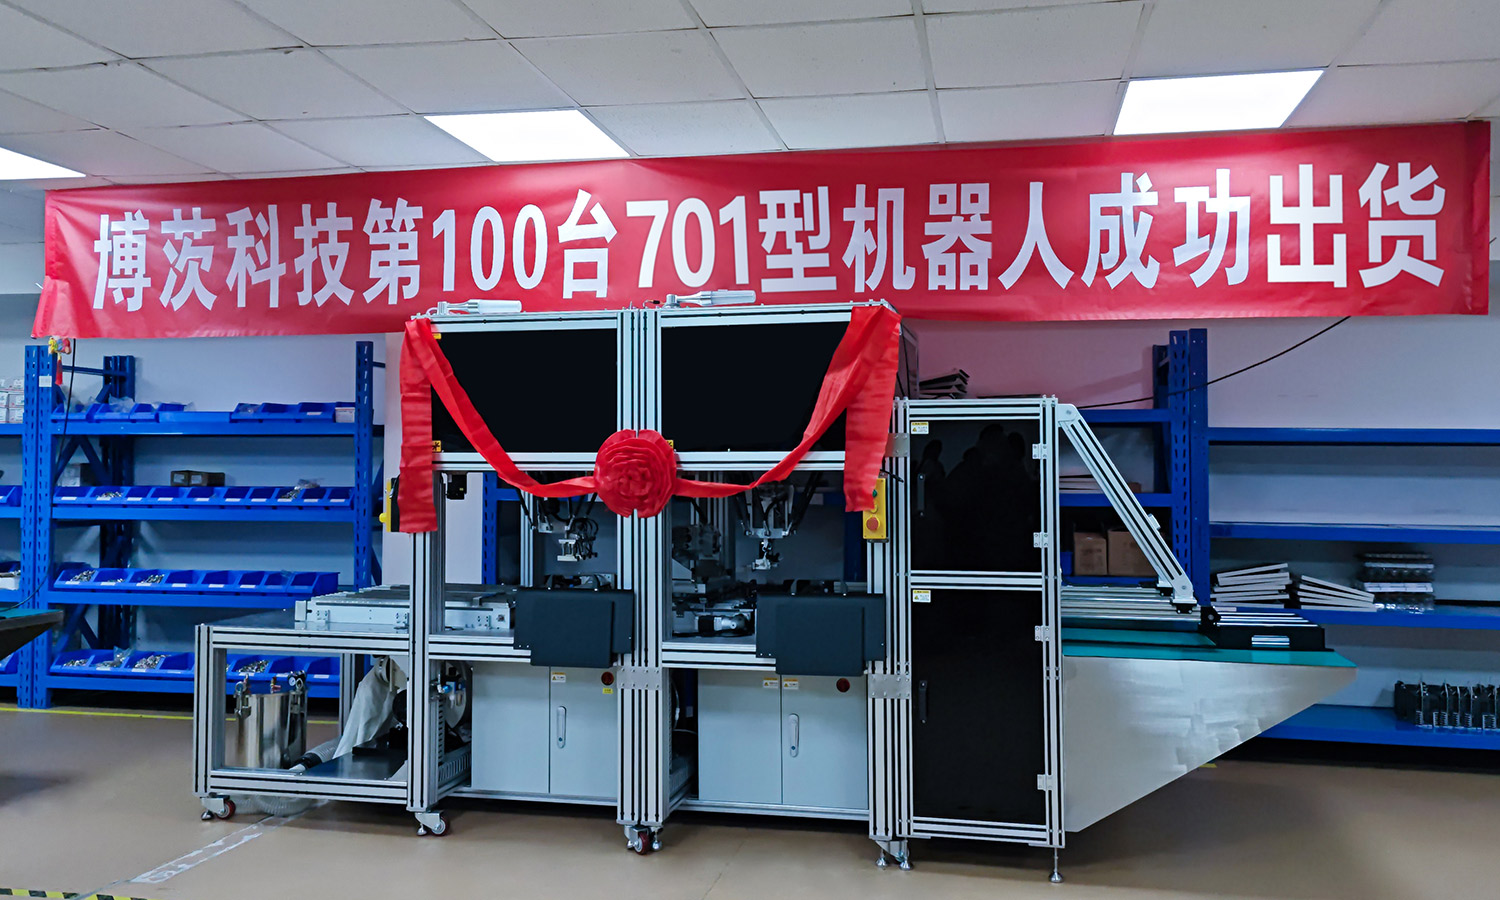 博茨科技第100台701型机器人成功出货   打造基础设施级工业制造平台